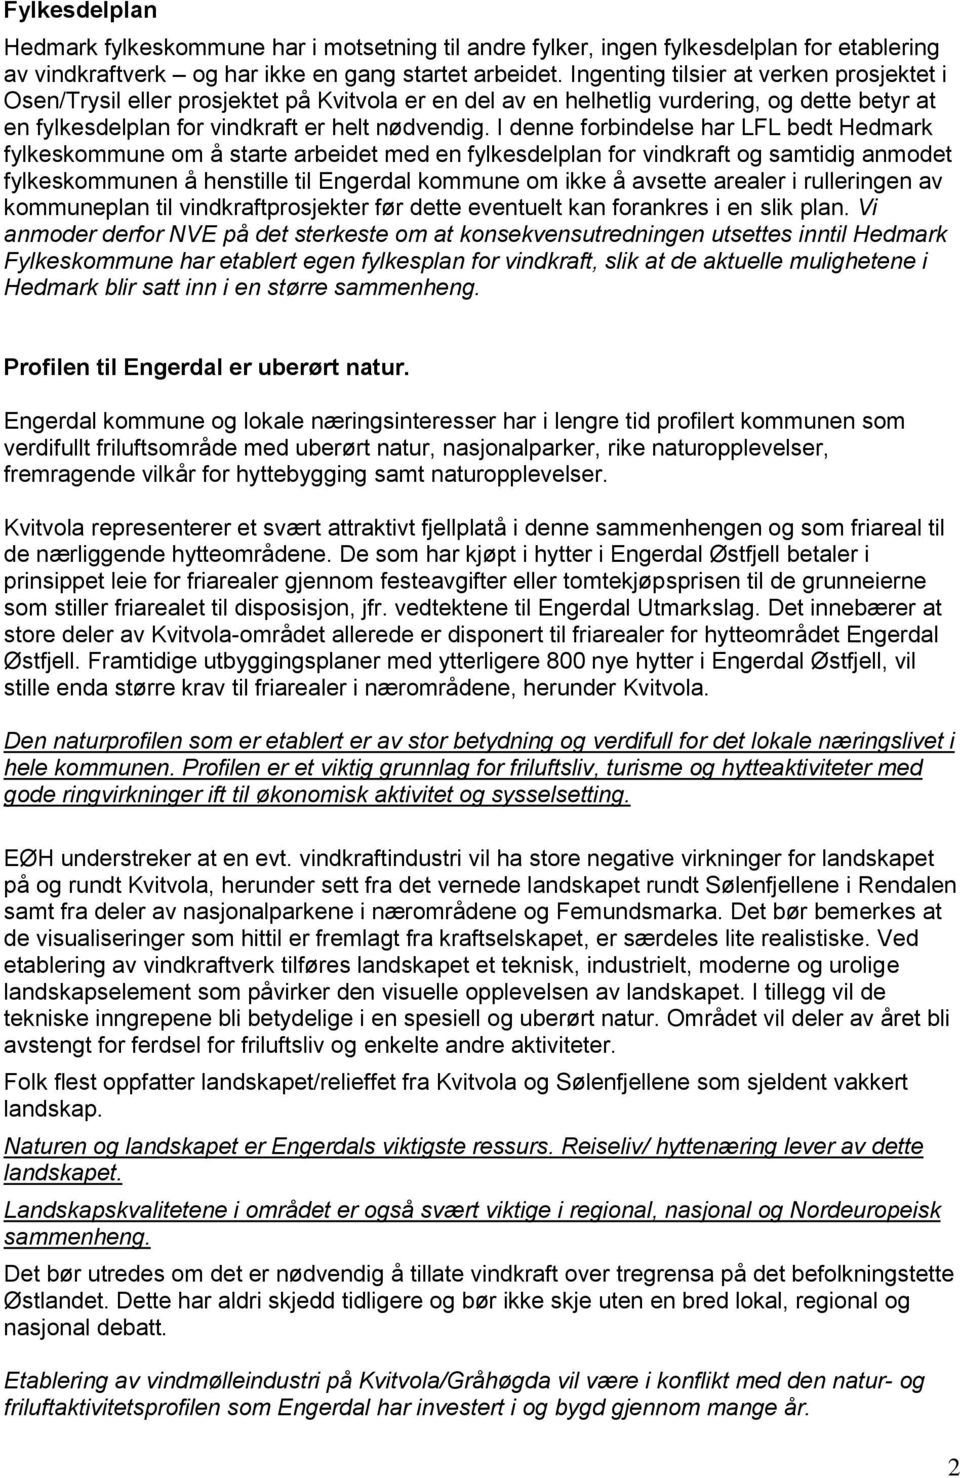 I denne forbindelse har LFL bedt Hedmark fylkeskommune om å starte arbeidet med en fylkesdelplan for vindkraft og samtidig anmodet fylkeskommunen å henstille til Engerdal kommune om ikke å avsette